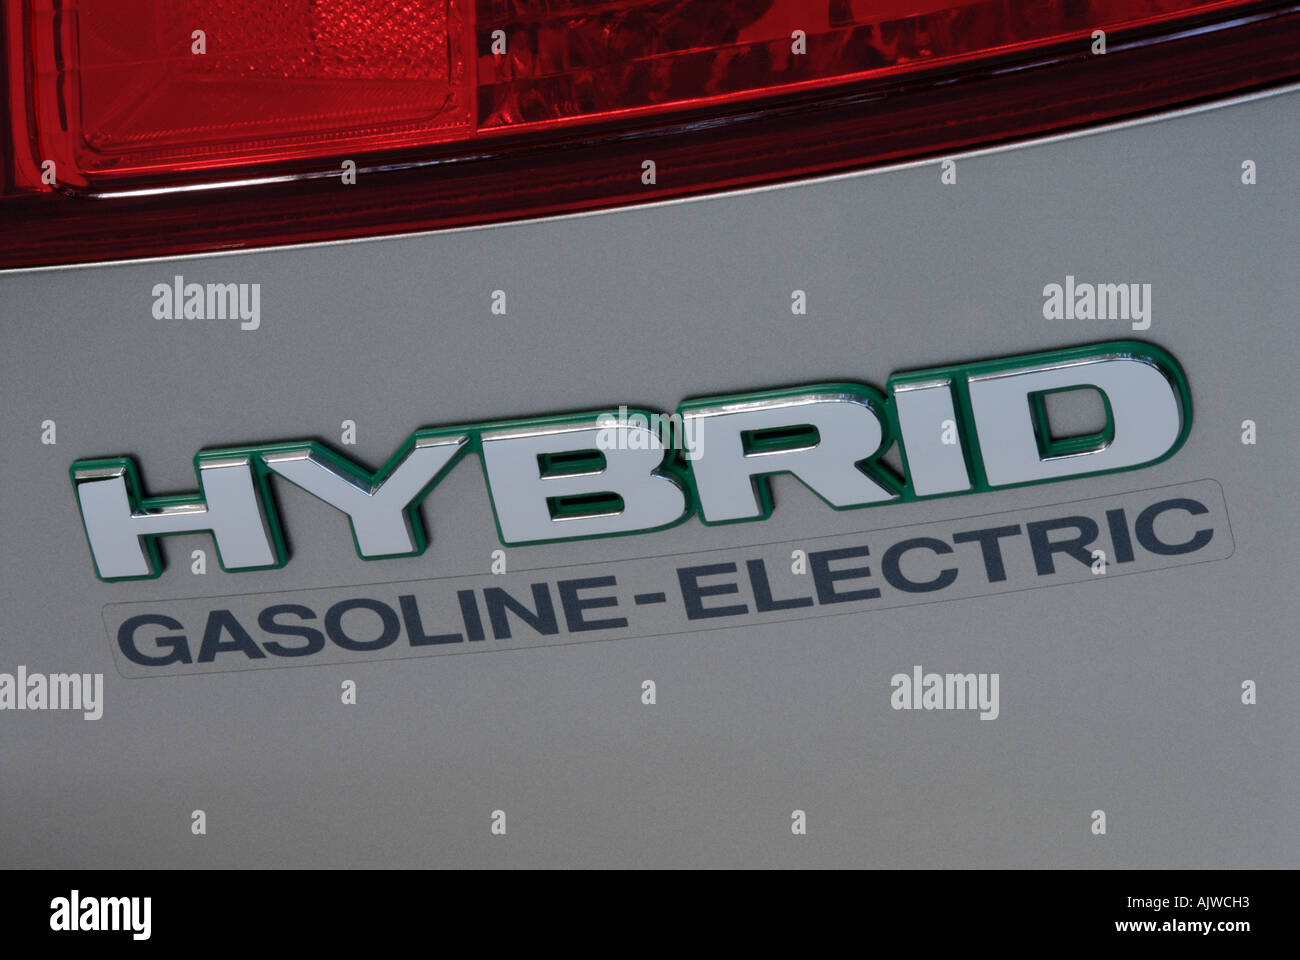 Coche híbrido gasolina-eléctrico logo Foto de stock